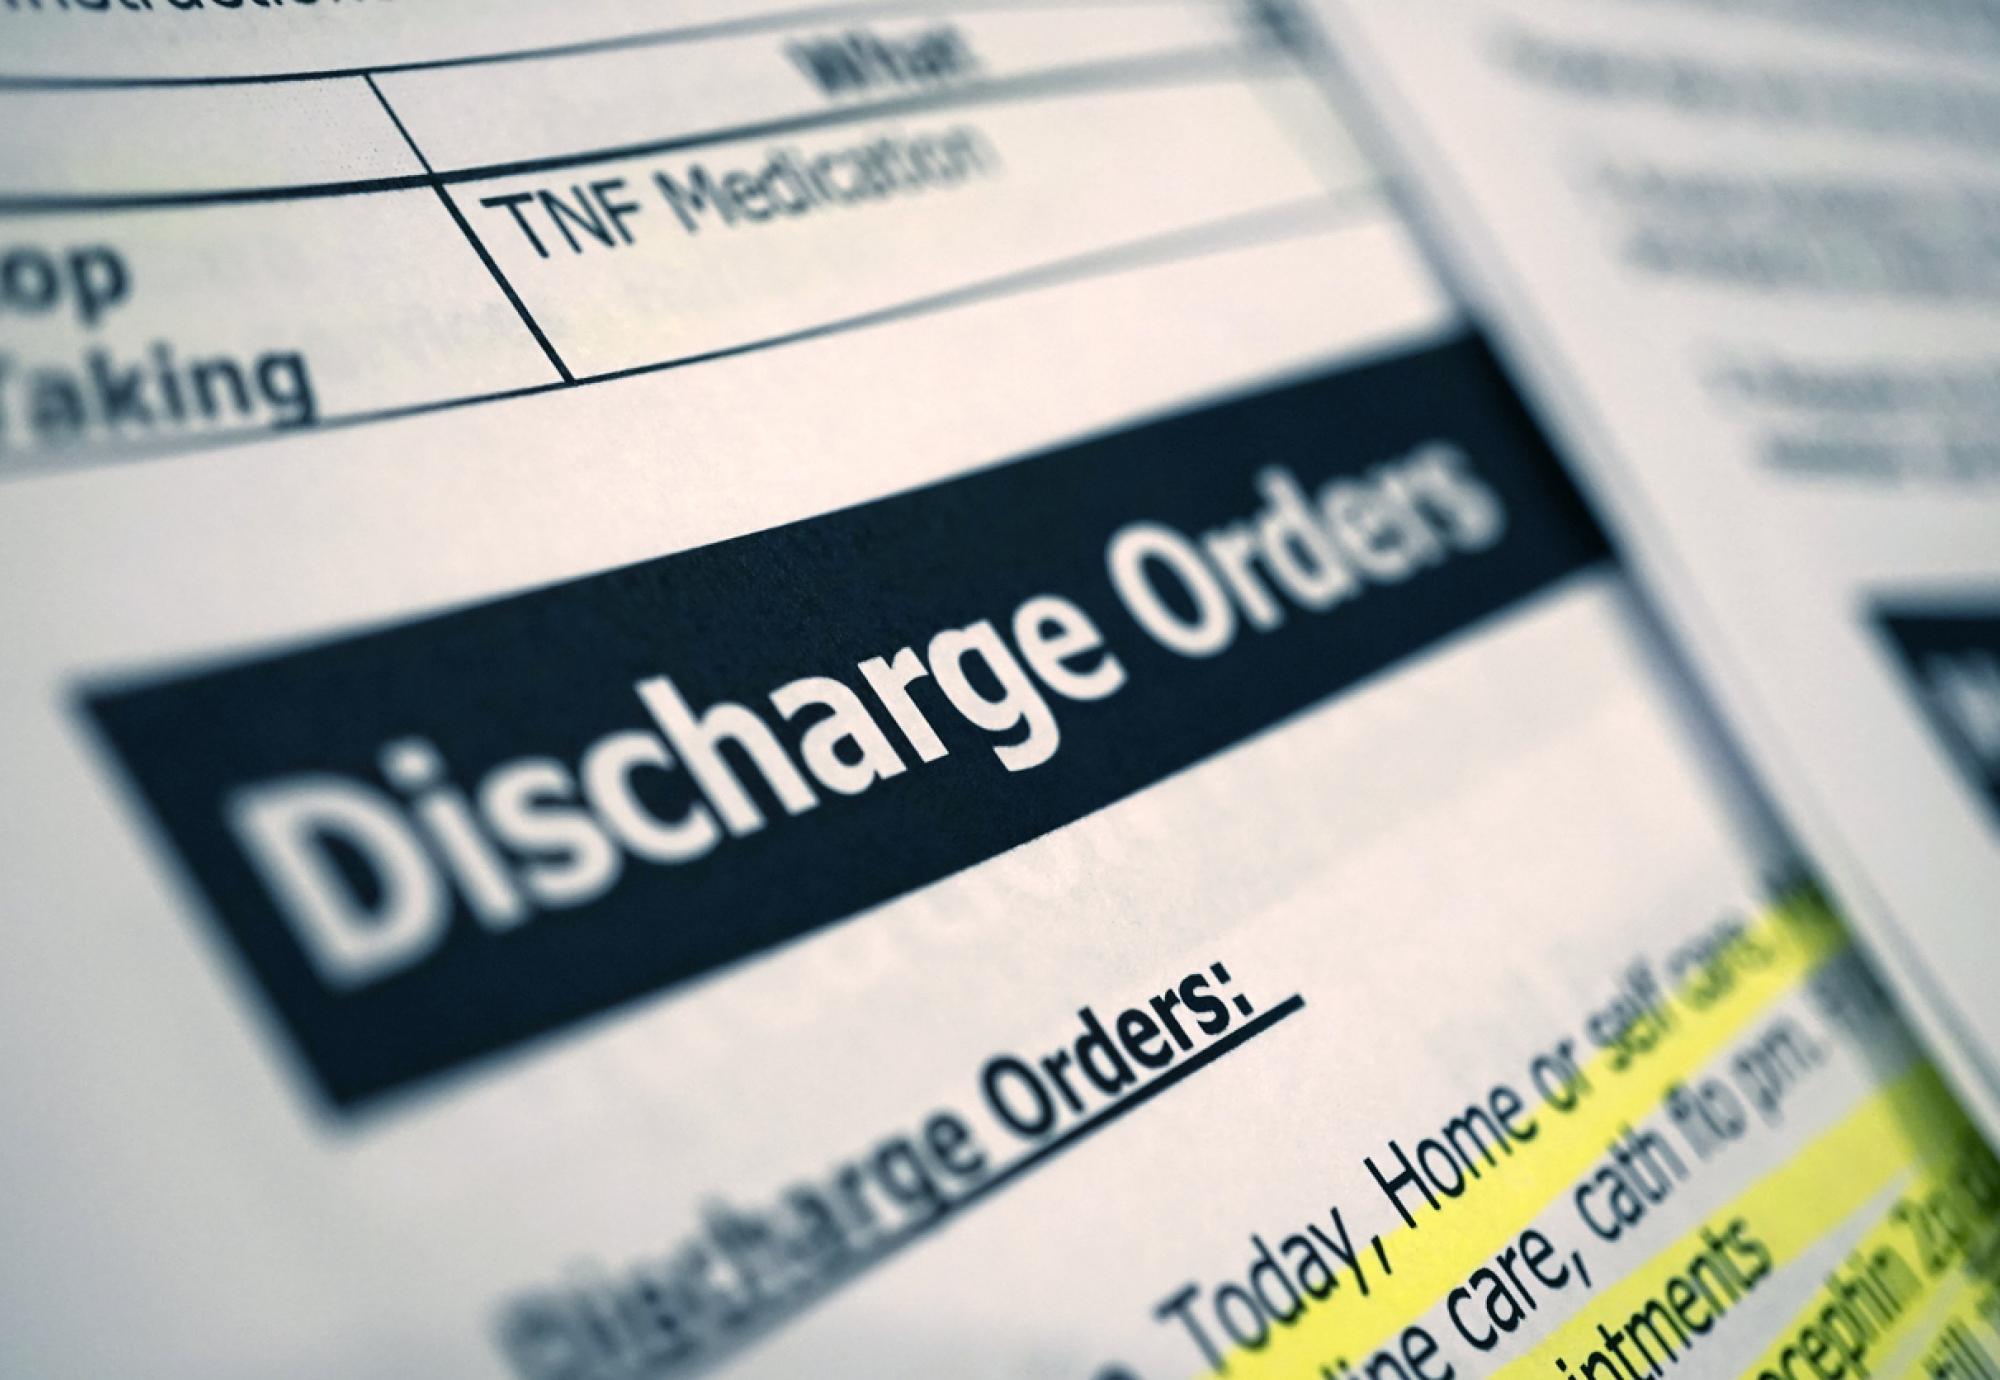 Patient discharge orders